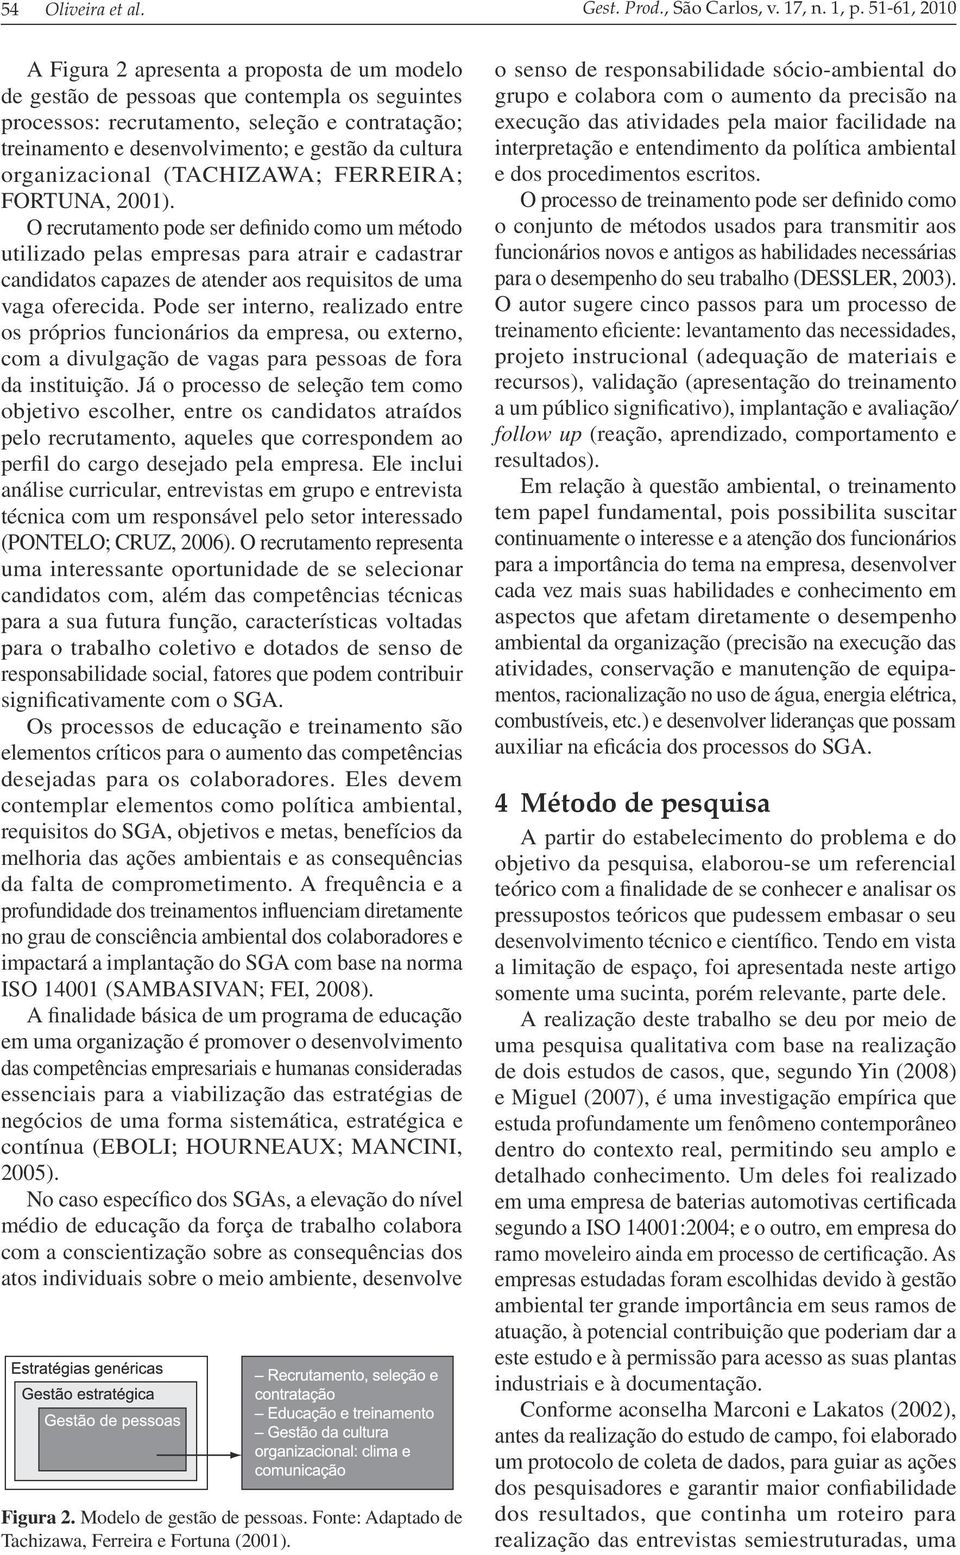 cultura organizacional (TACHIZAWA; FERREIRA; FORTUNA, 2001).